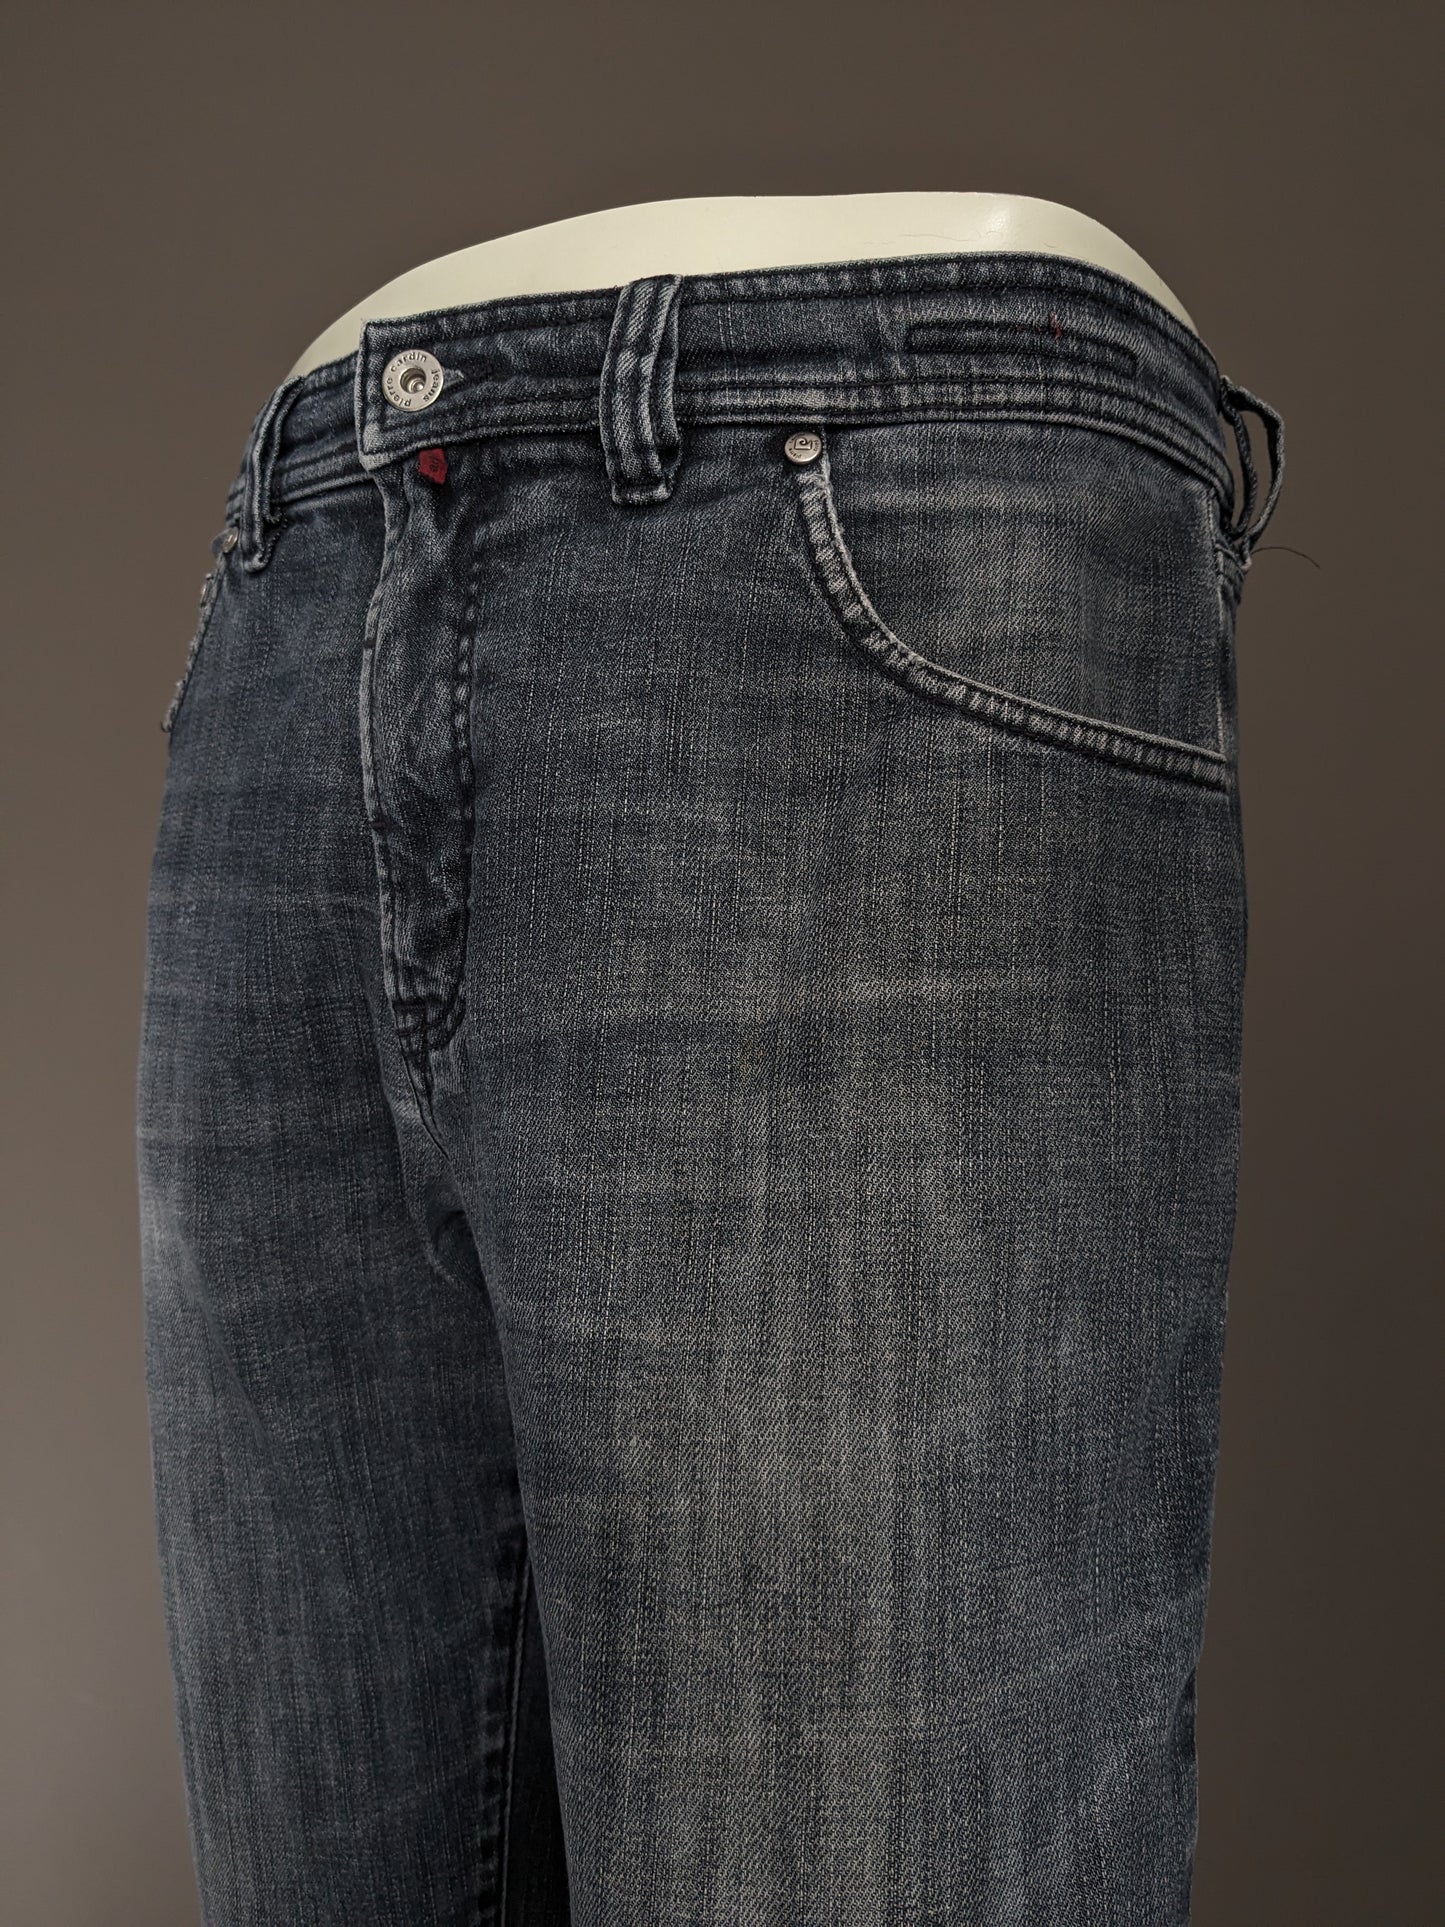 Pierre Cardin Jeans. Schwarz grau gefärbt. Größe W33 - L30. Geben Sie Mod Deauville ein.